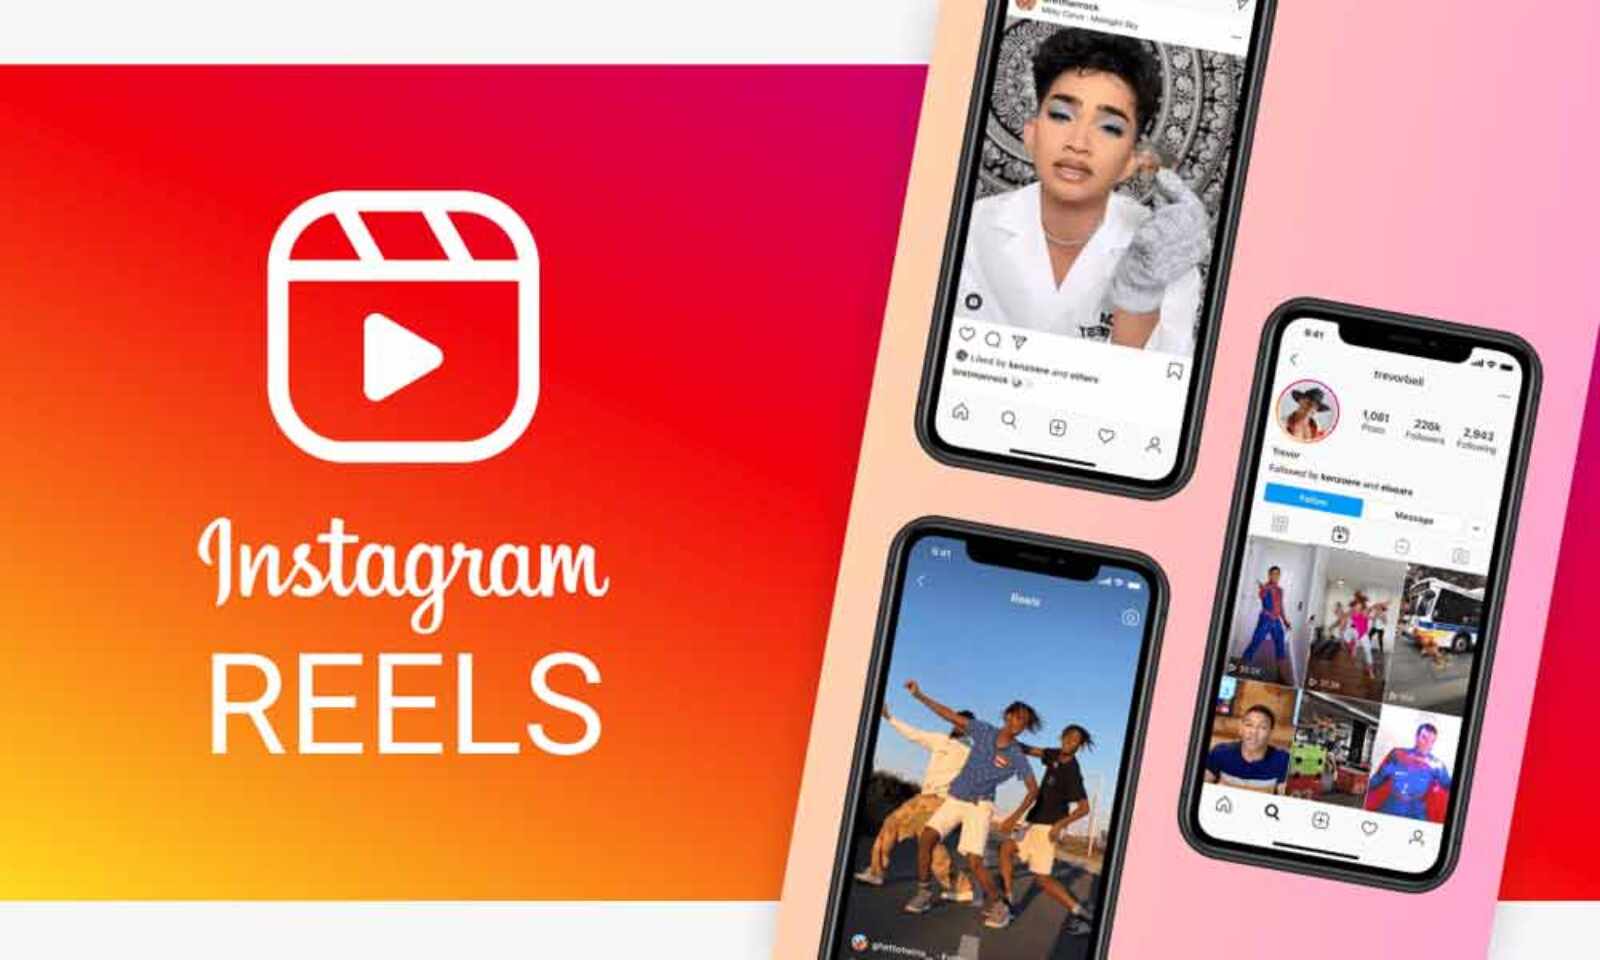 Руководство по освоению роликов Instagram для бизнеса и авторов